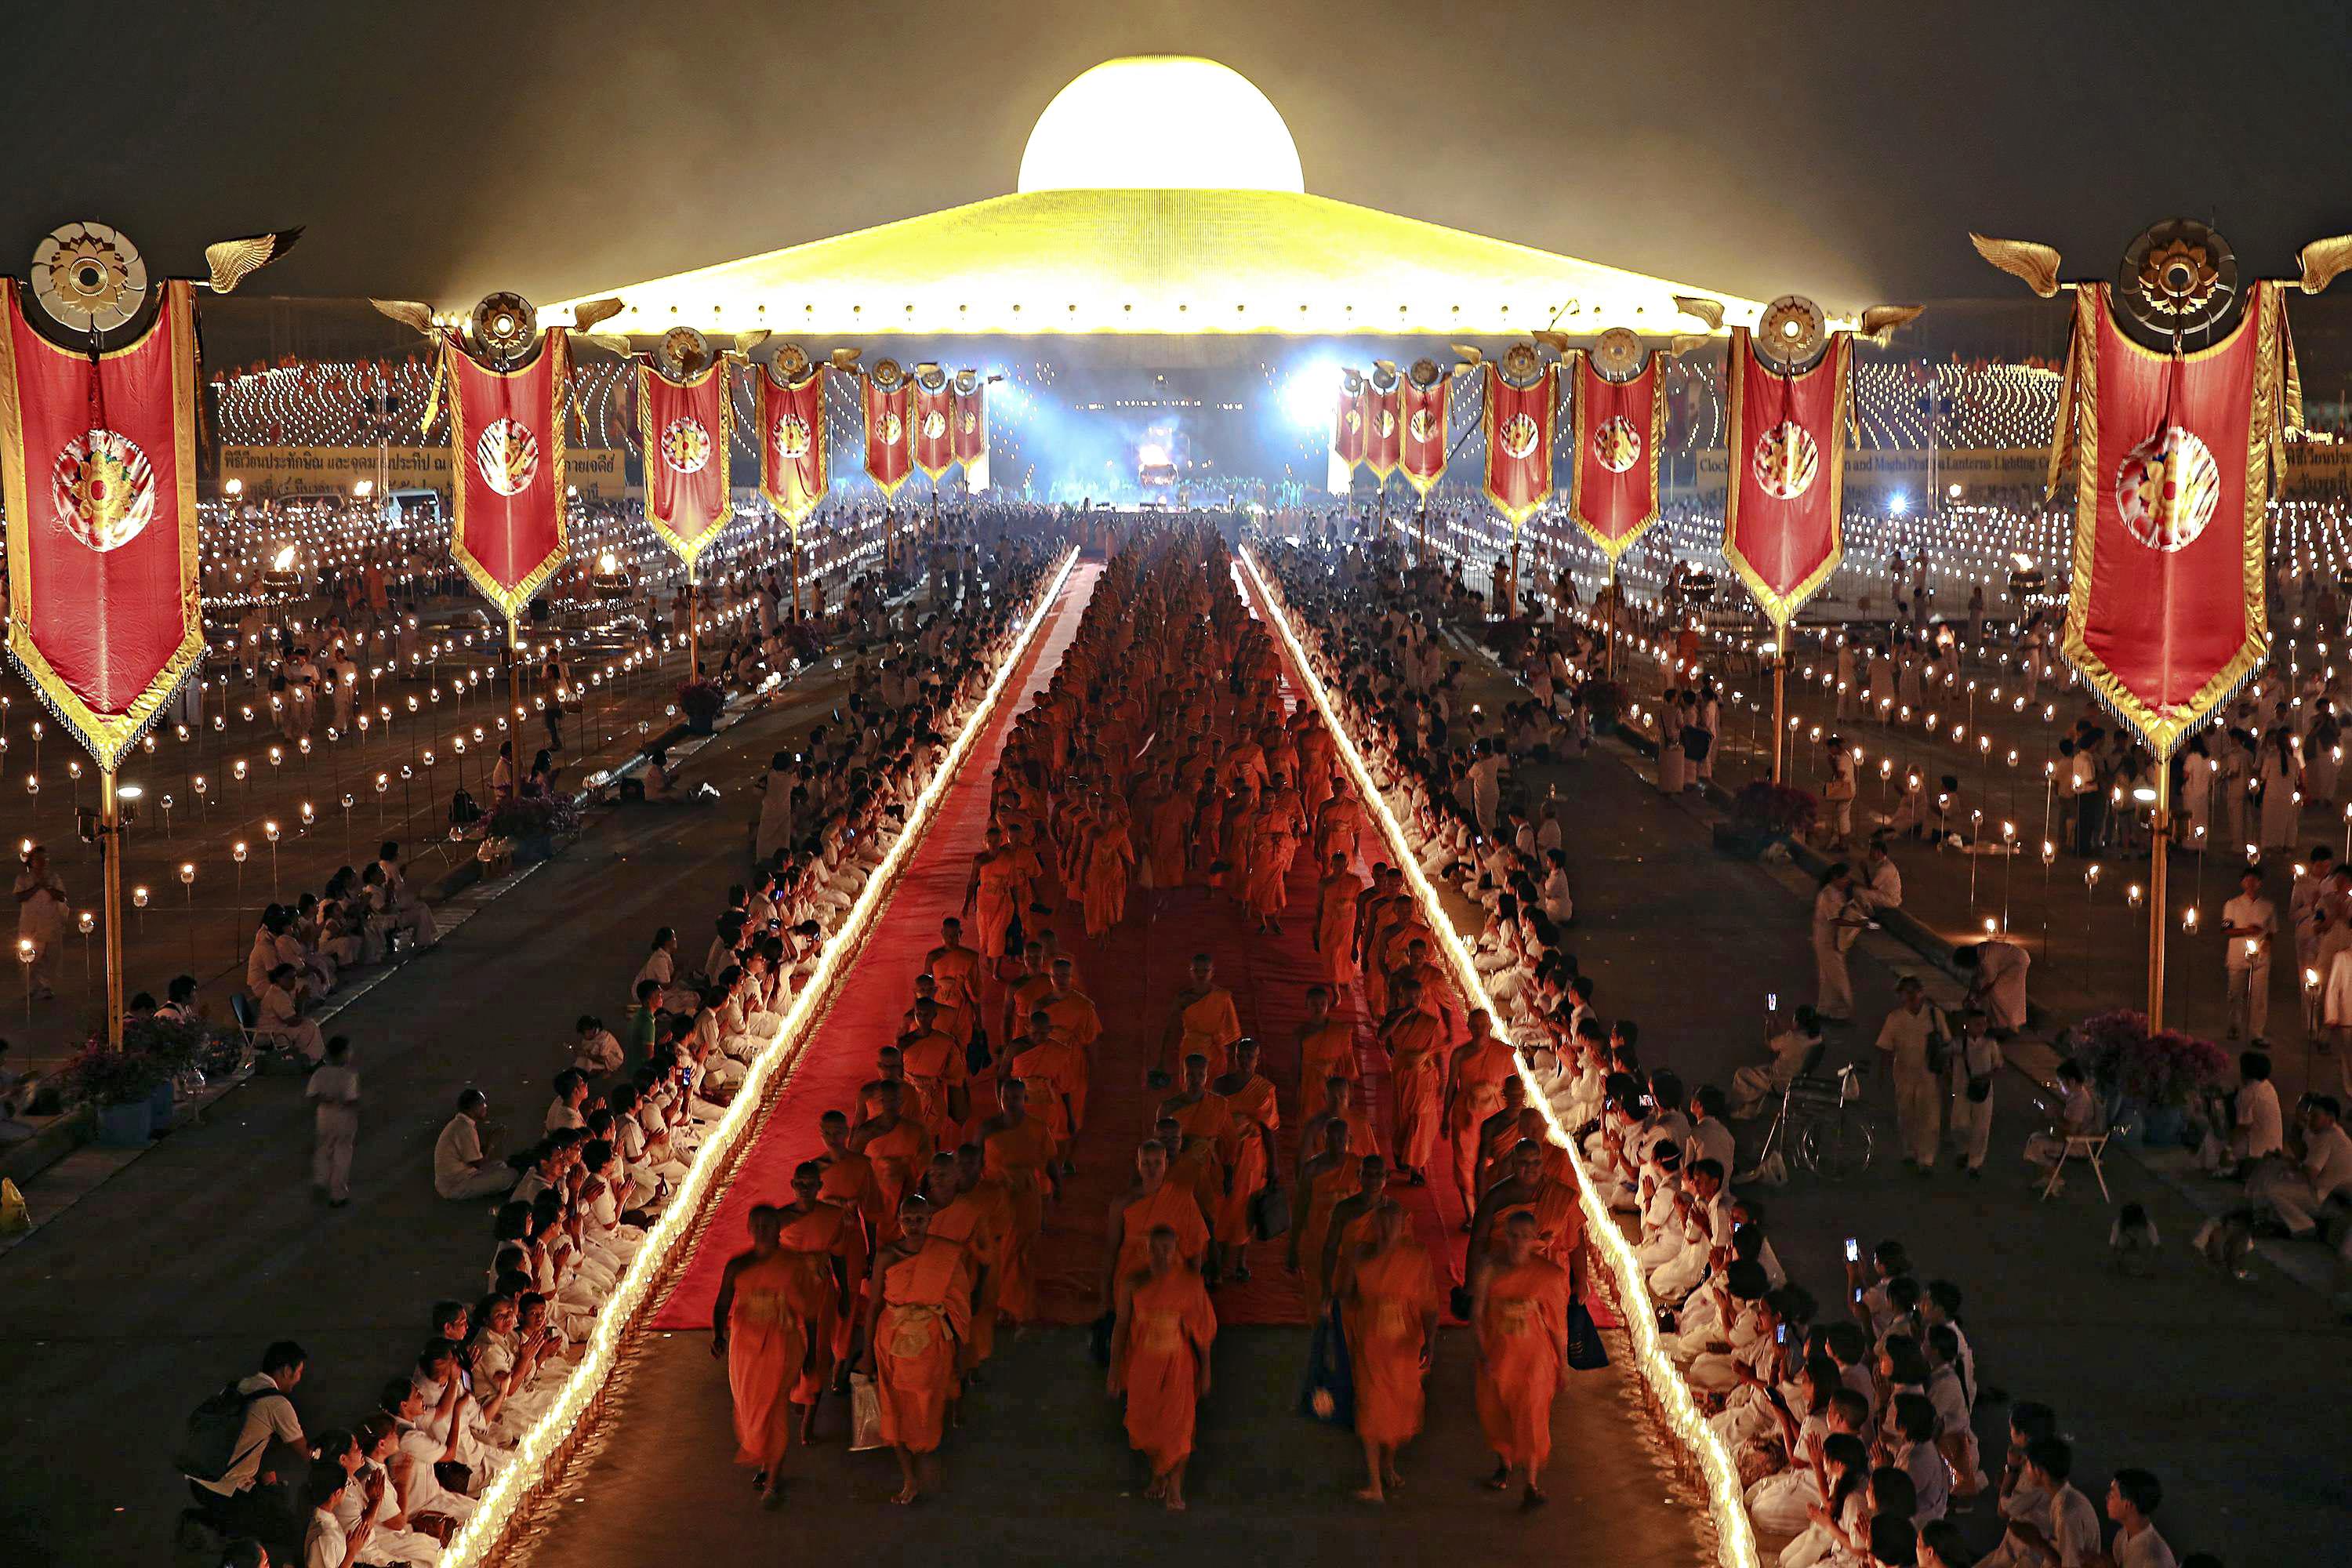 THAILAND-BUDDHISM/